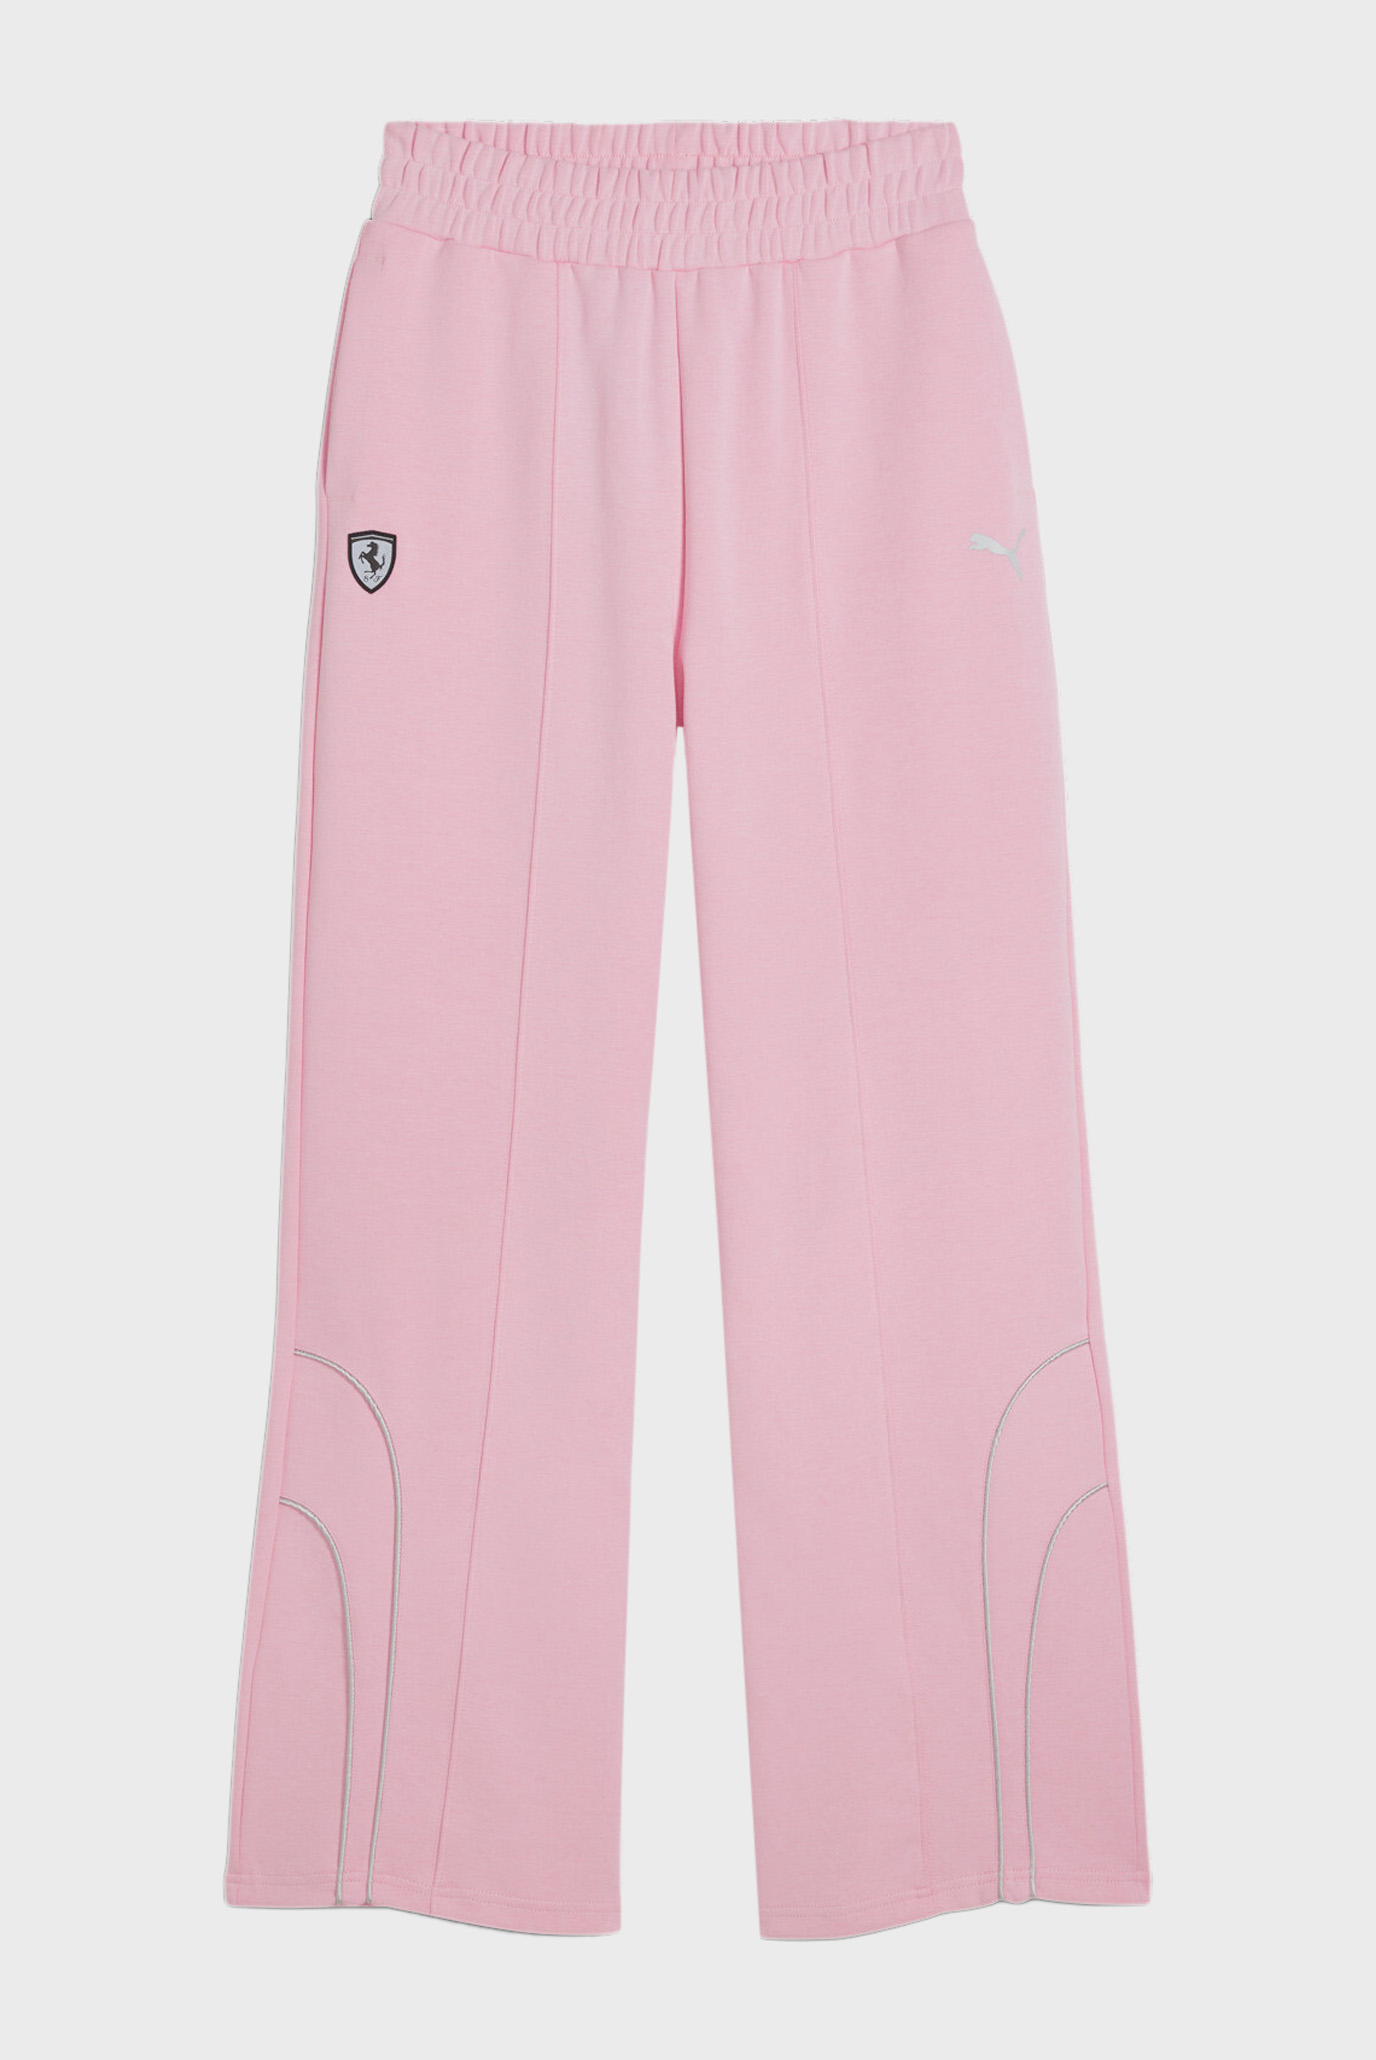 Жіночі рожеві спортивні штани Scuderia Ferrari Style Women's Motorsport Pants 1